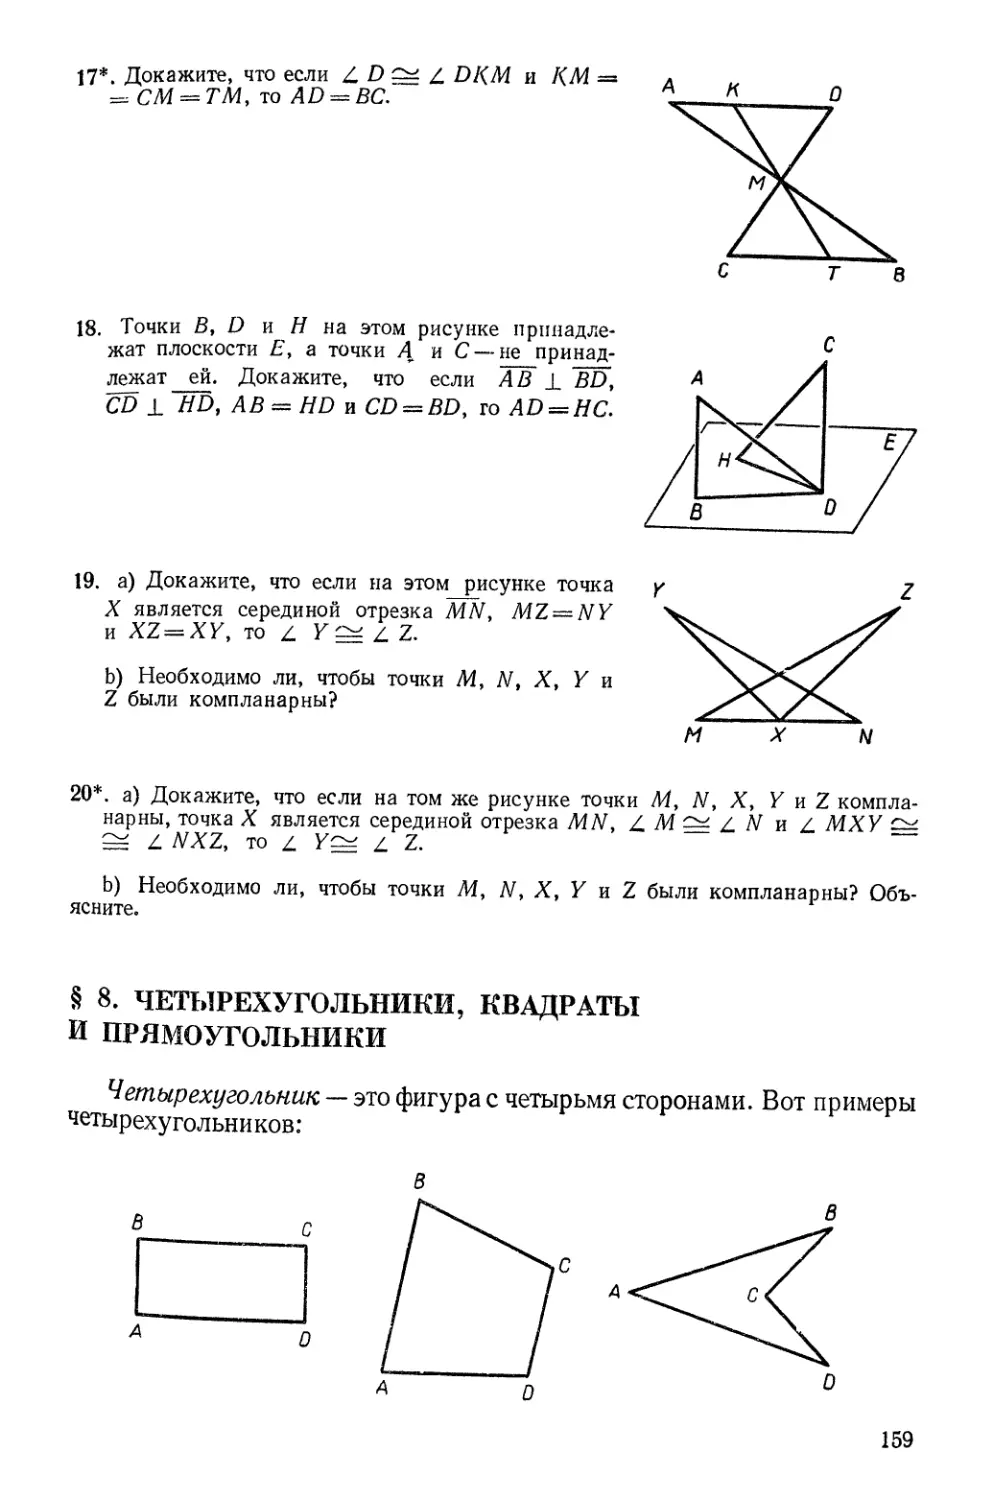 § 8. Четырехугольники, квадраты и прямоугольники